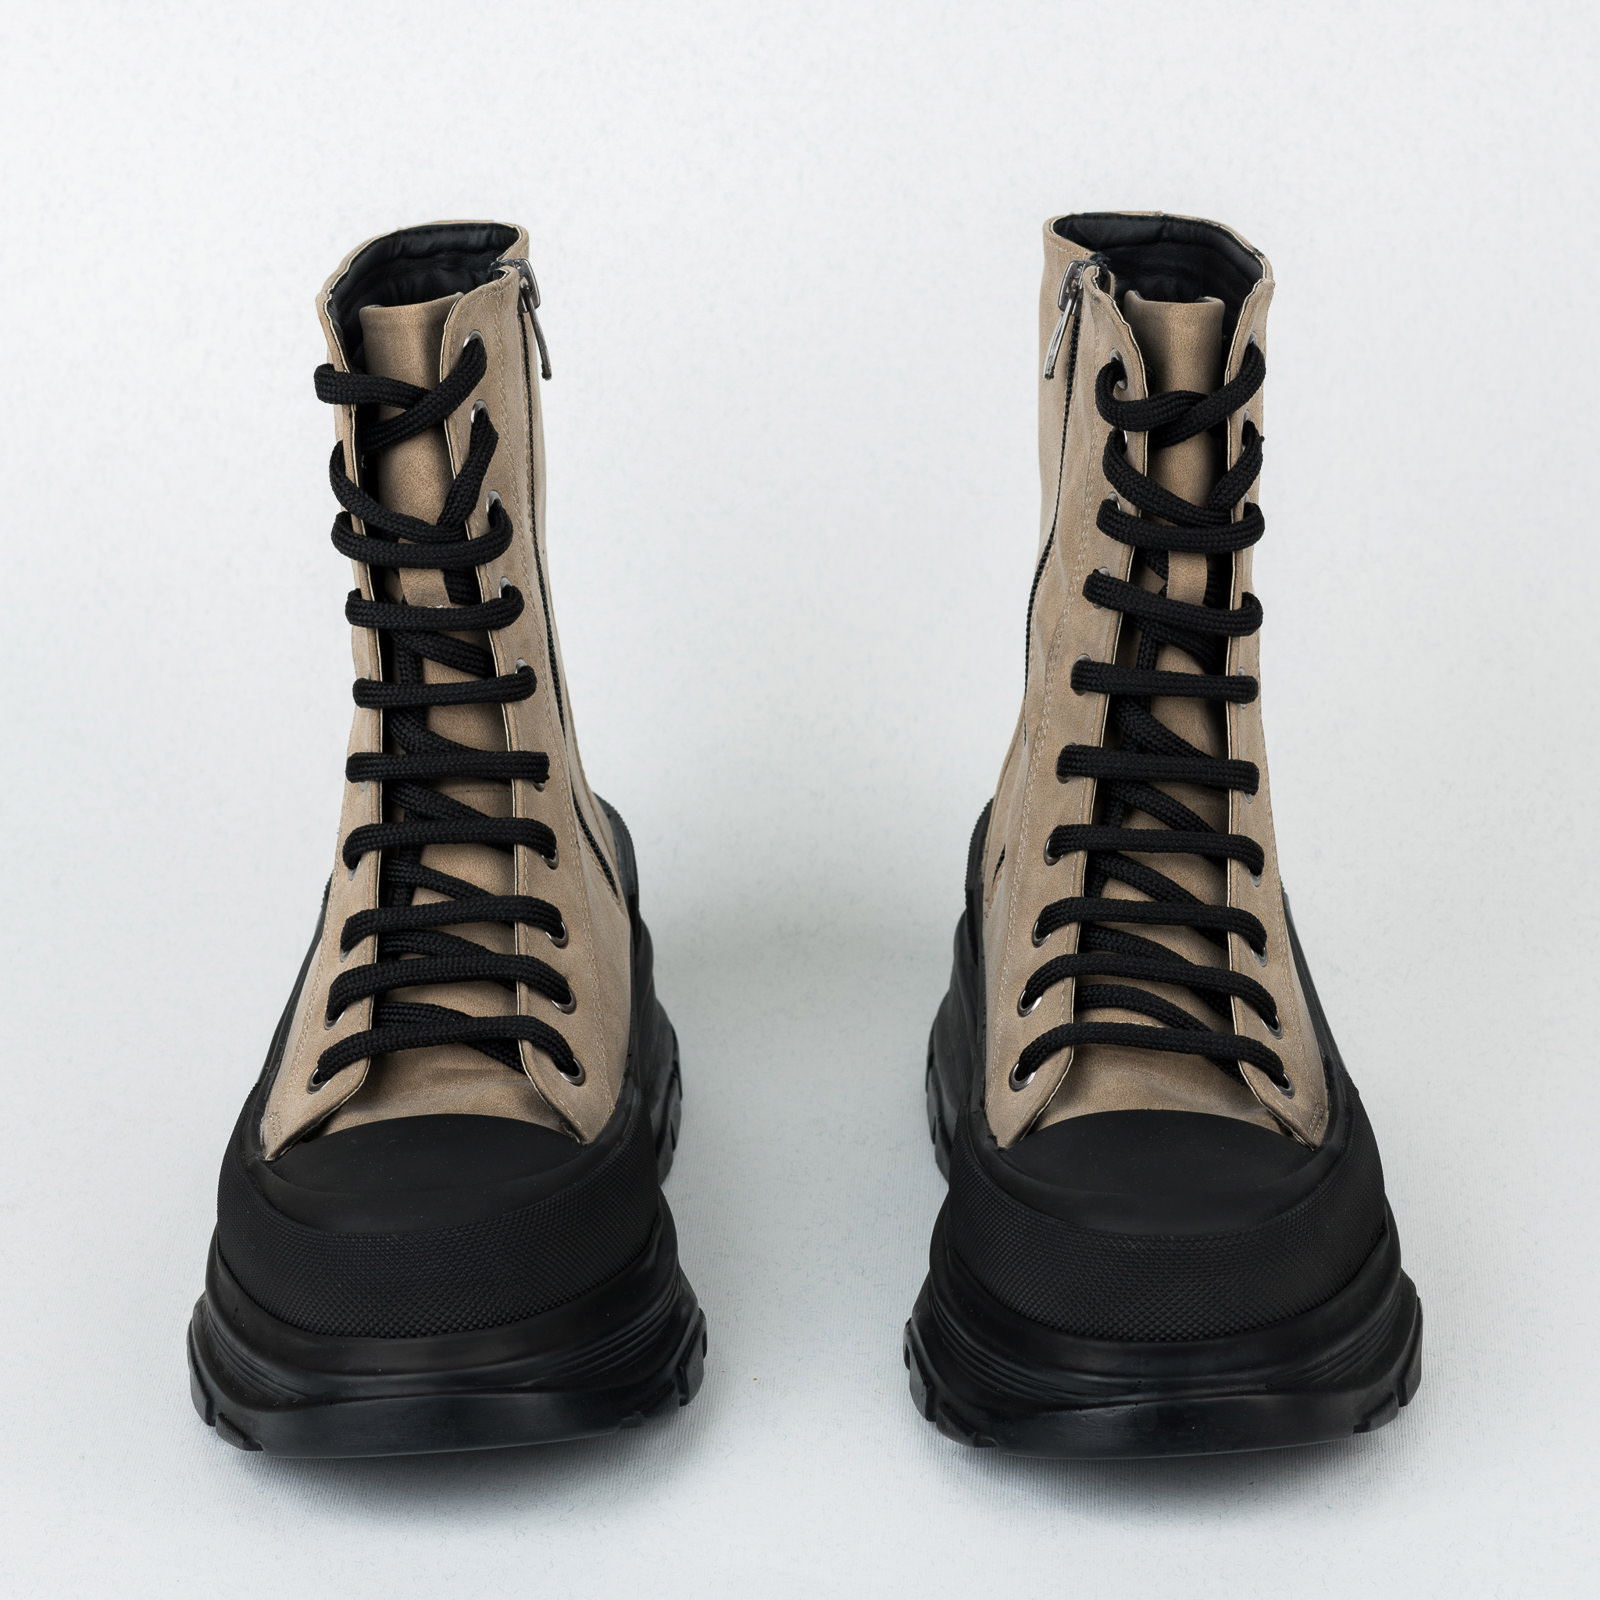 Women ankle boots B539 - BEIGE